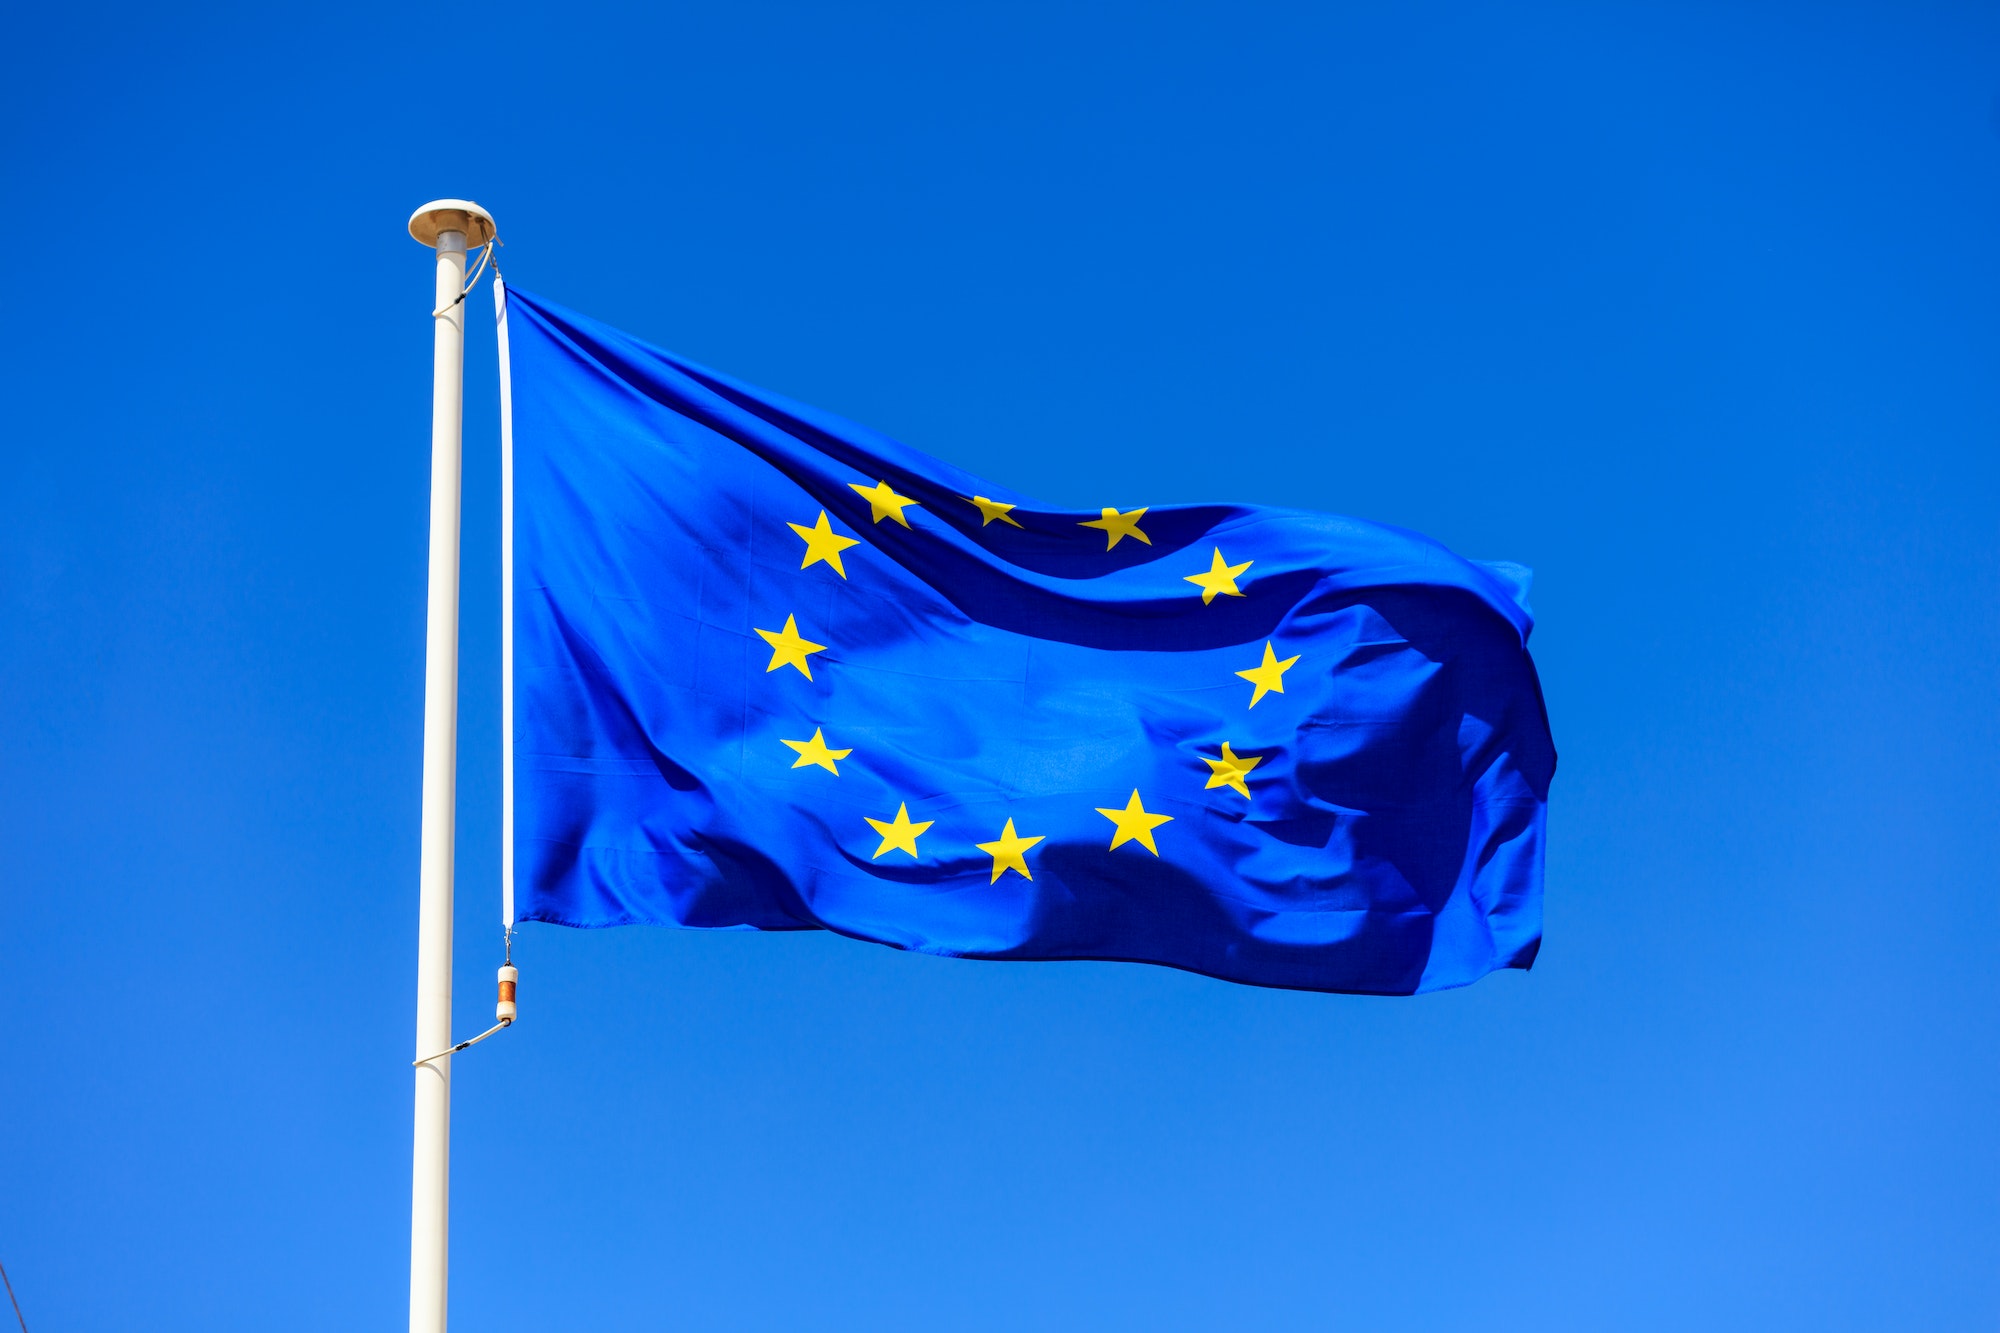 EU flag. European Union flag on a pole waving on blue sky background